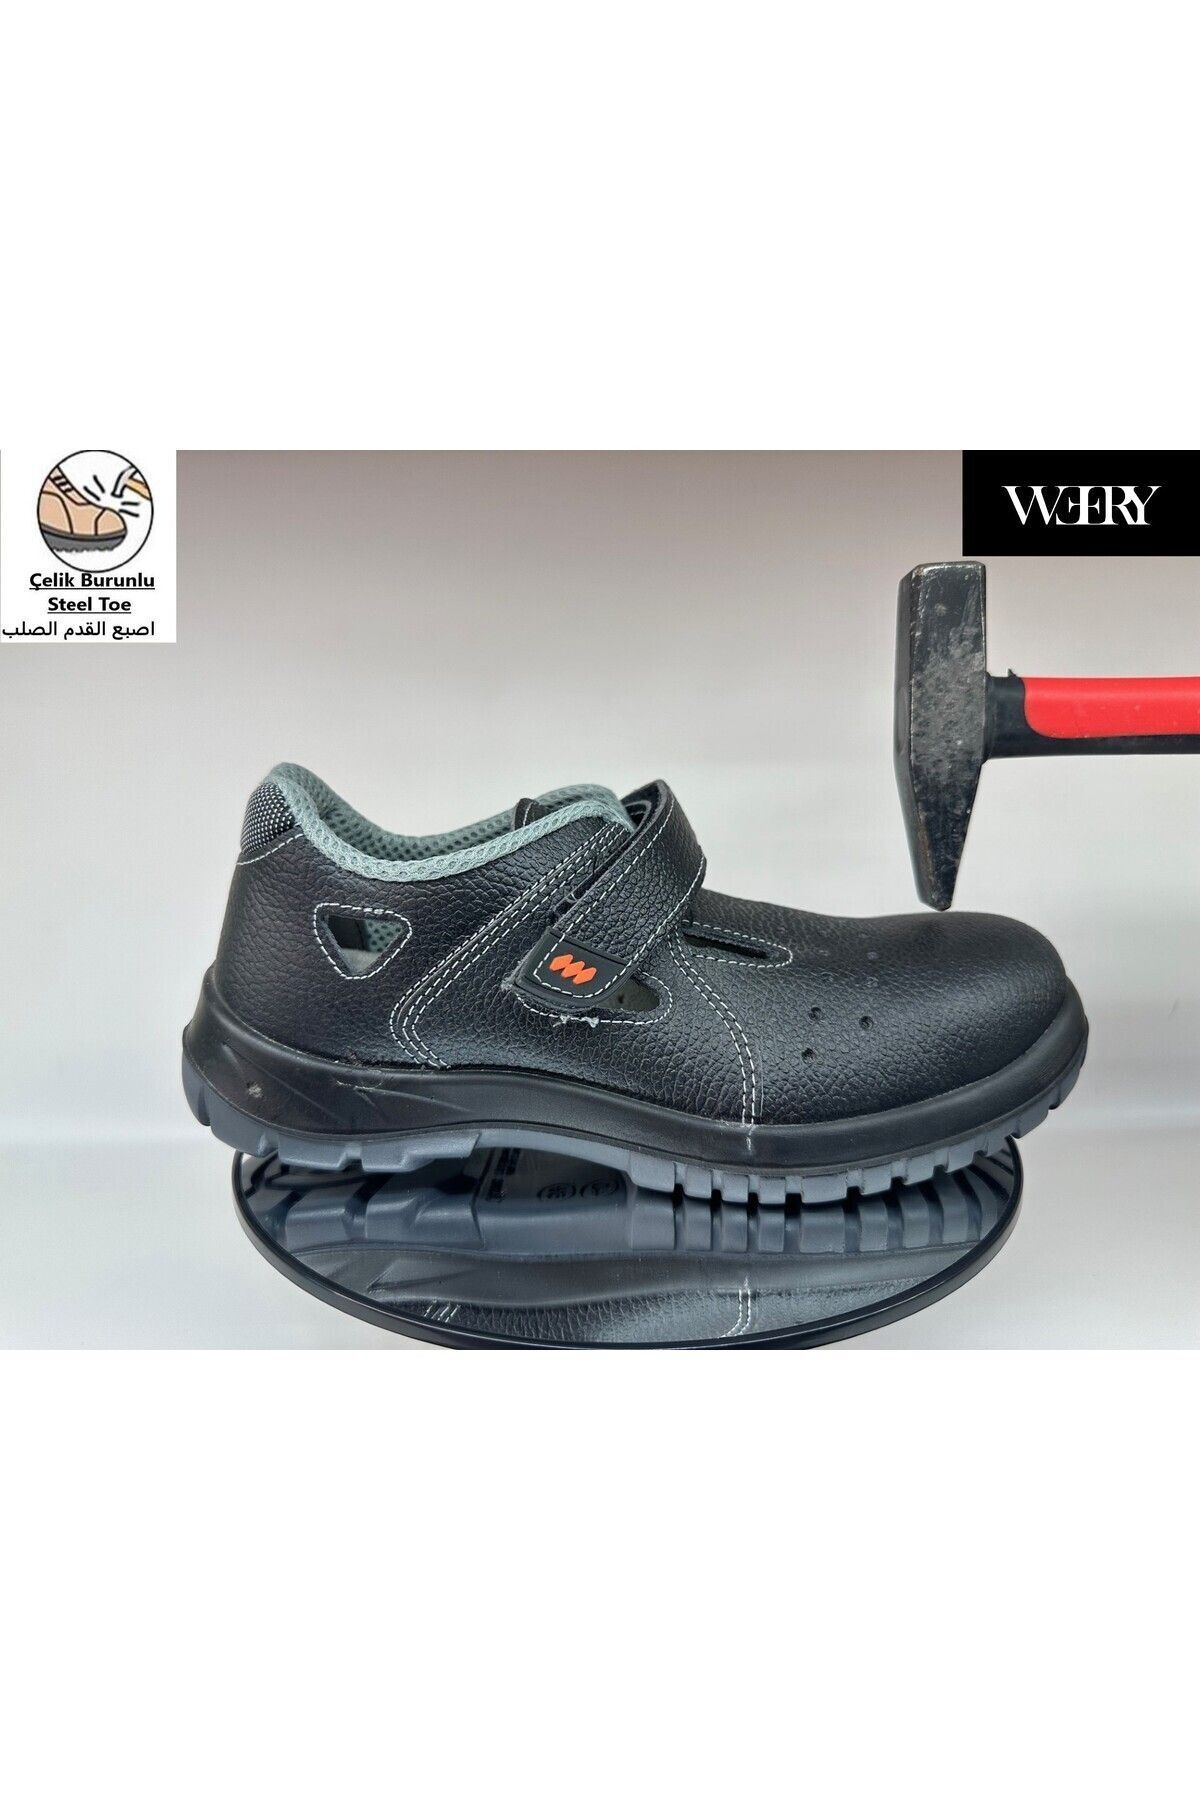 e&e Mekap 234 R S1 Hakiki Deri S Hafif Rahat Kaydırmaz Yazlık Çelik Burunlu Sandalet Model İş Ayakkabısı